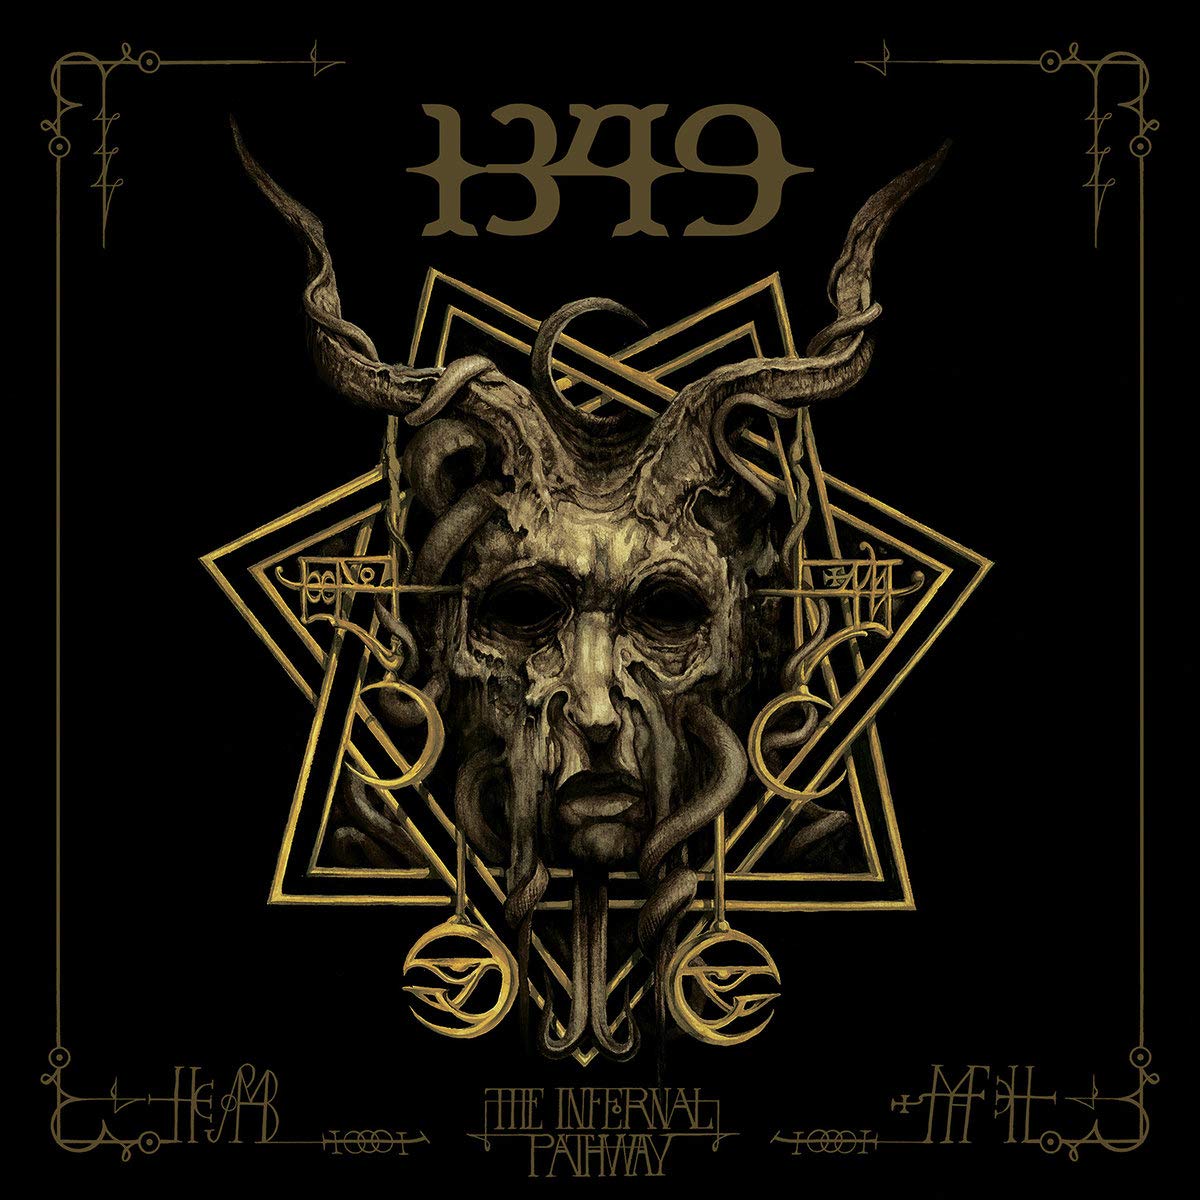 Vinile 1349 - The Infernal Pathway (Silver Vinyl) (2 Lp) NUOVO SIGILLATO, EDIZIONE DEL 18/10/2019 SUBITO DISPONIBILE